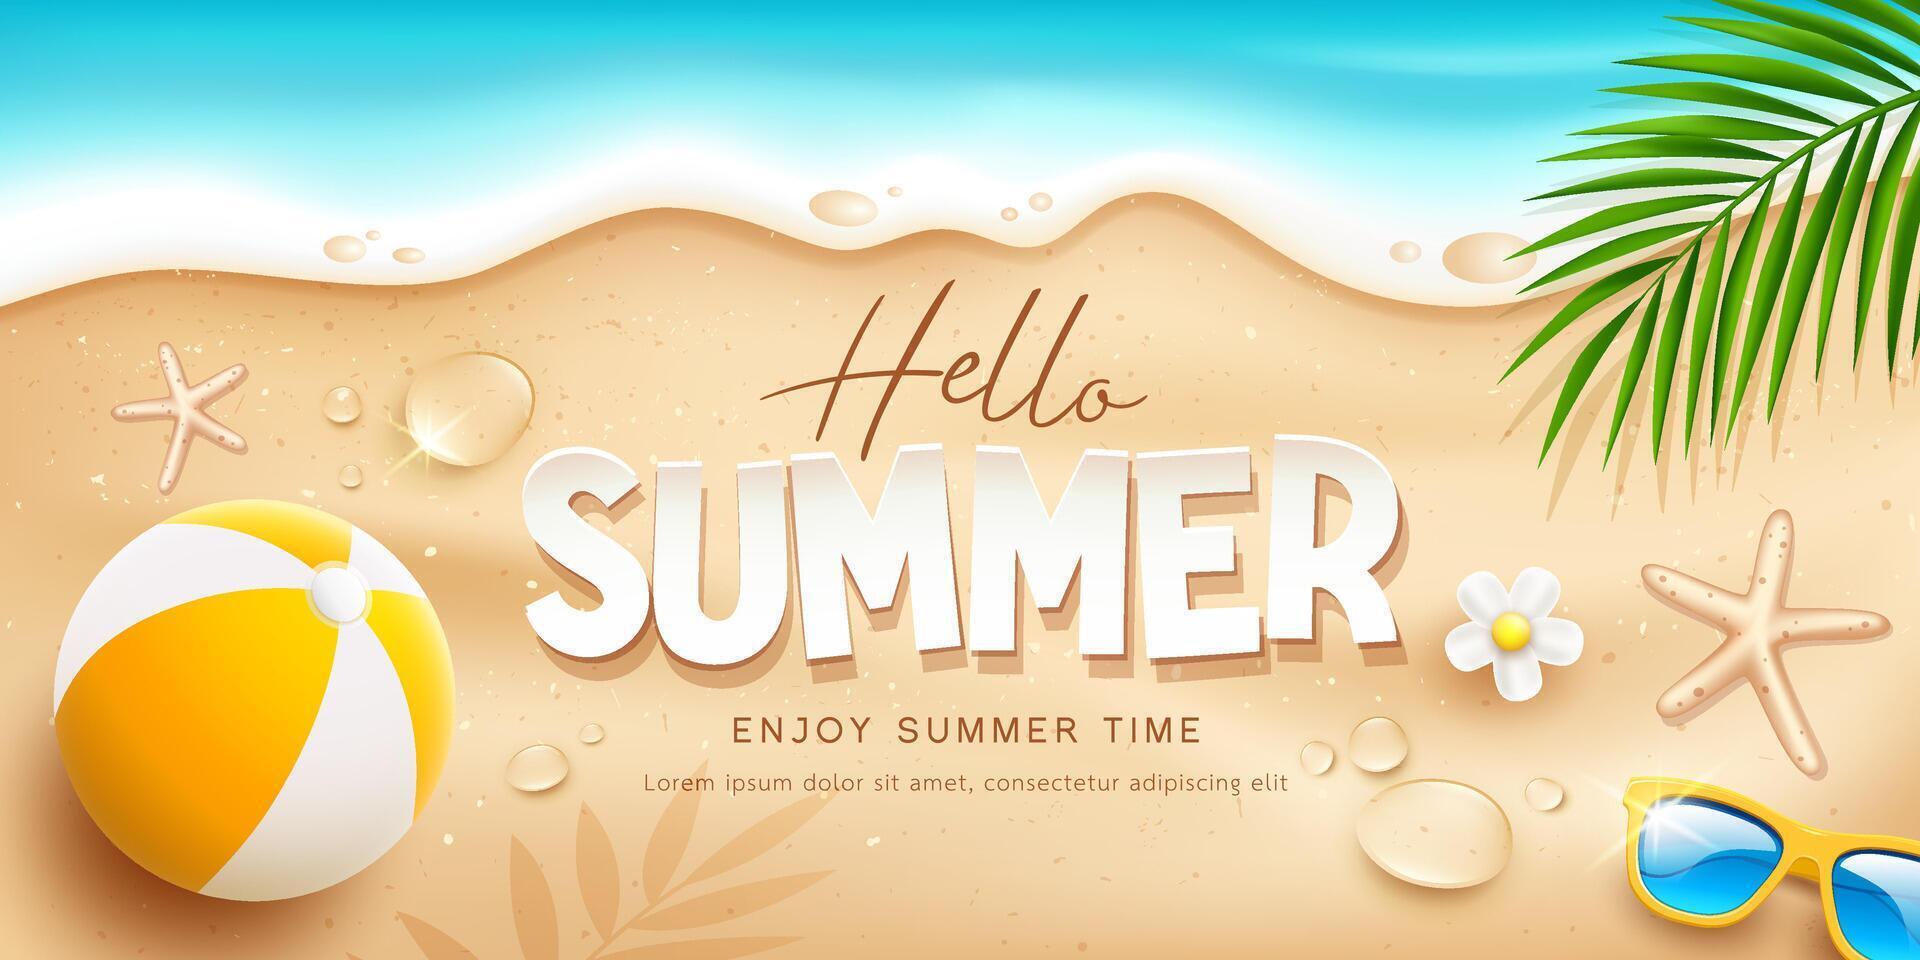 verano fiesta playa pelota y Gafas de sol, agua gota, blanco flor, Coco hoja, bandera diseño en arena playa fondo, eps 10 vector ilustración